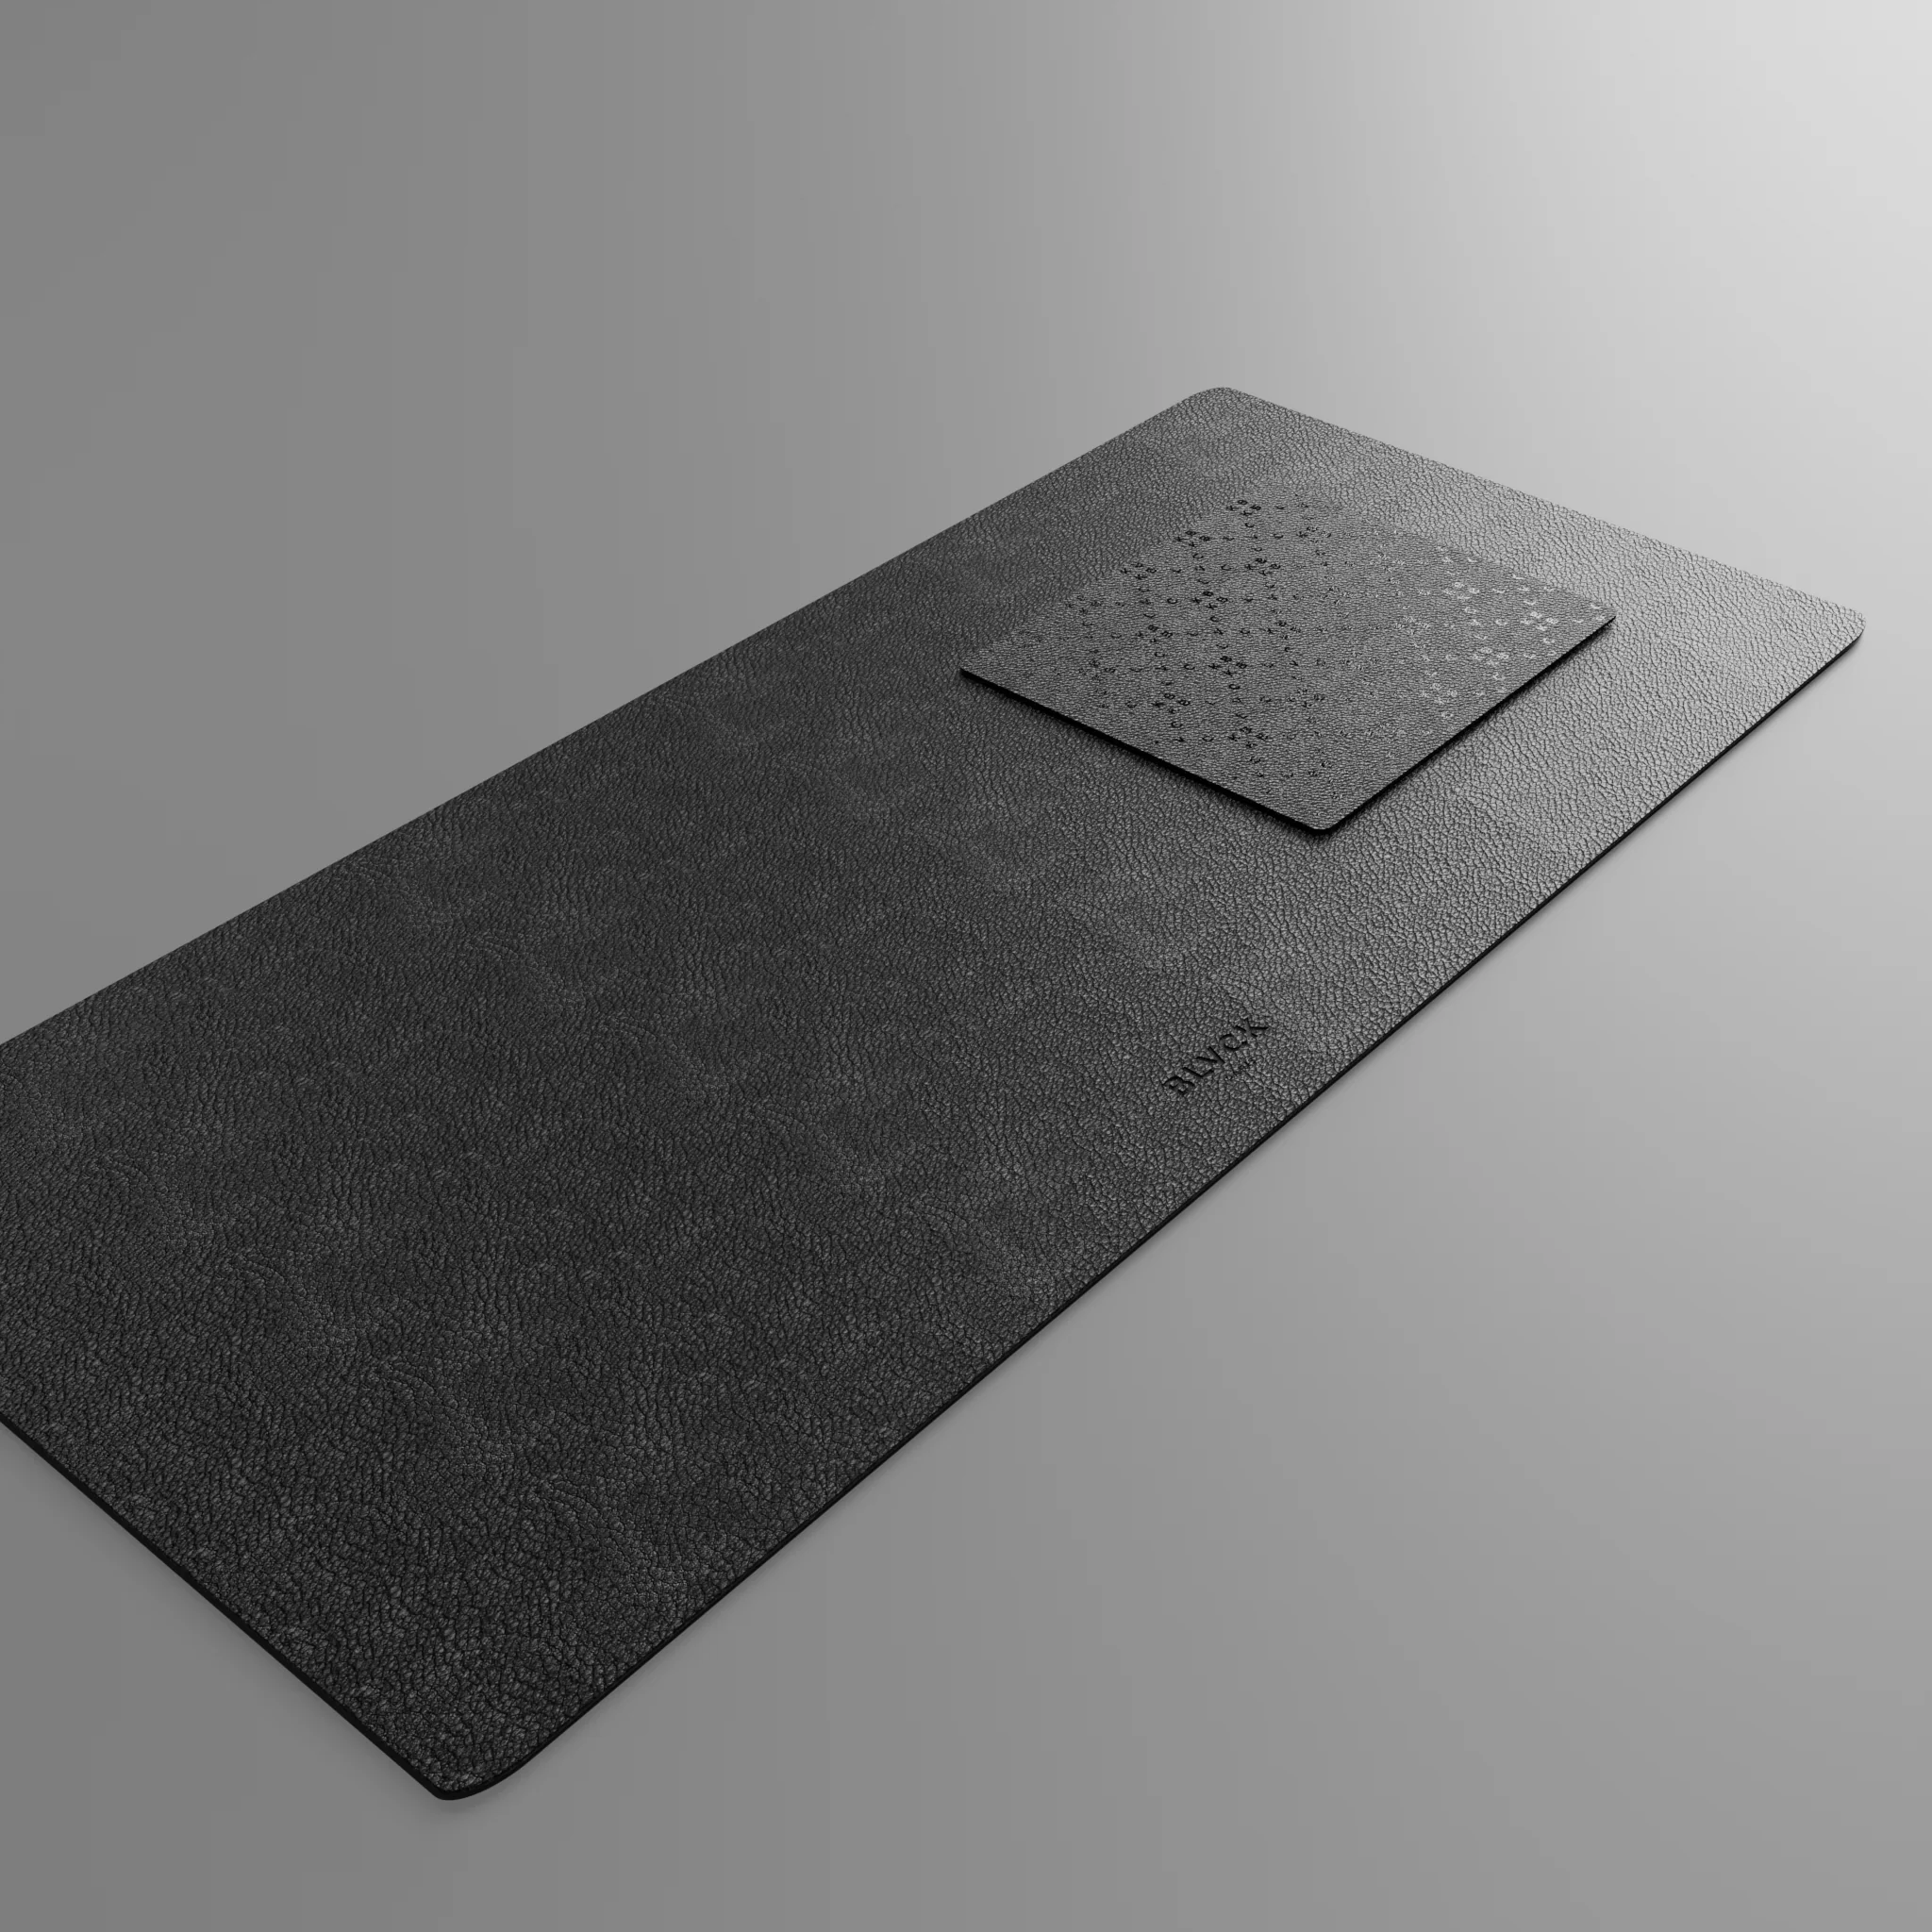 Blvck Large Leather Desktop Pad